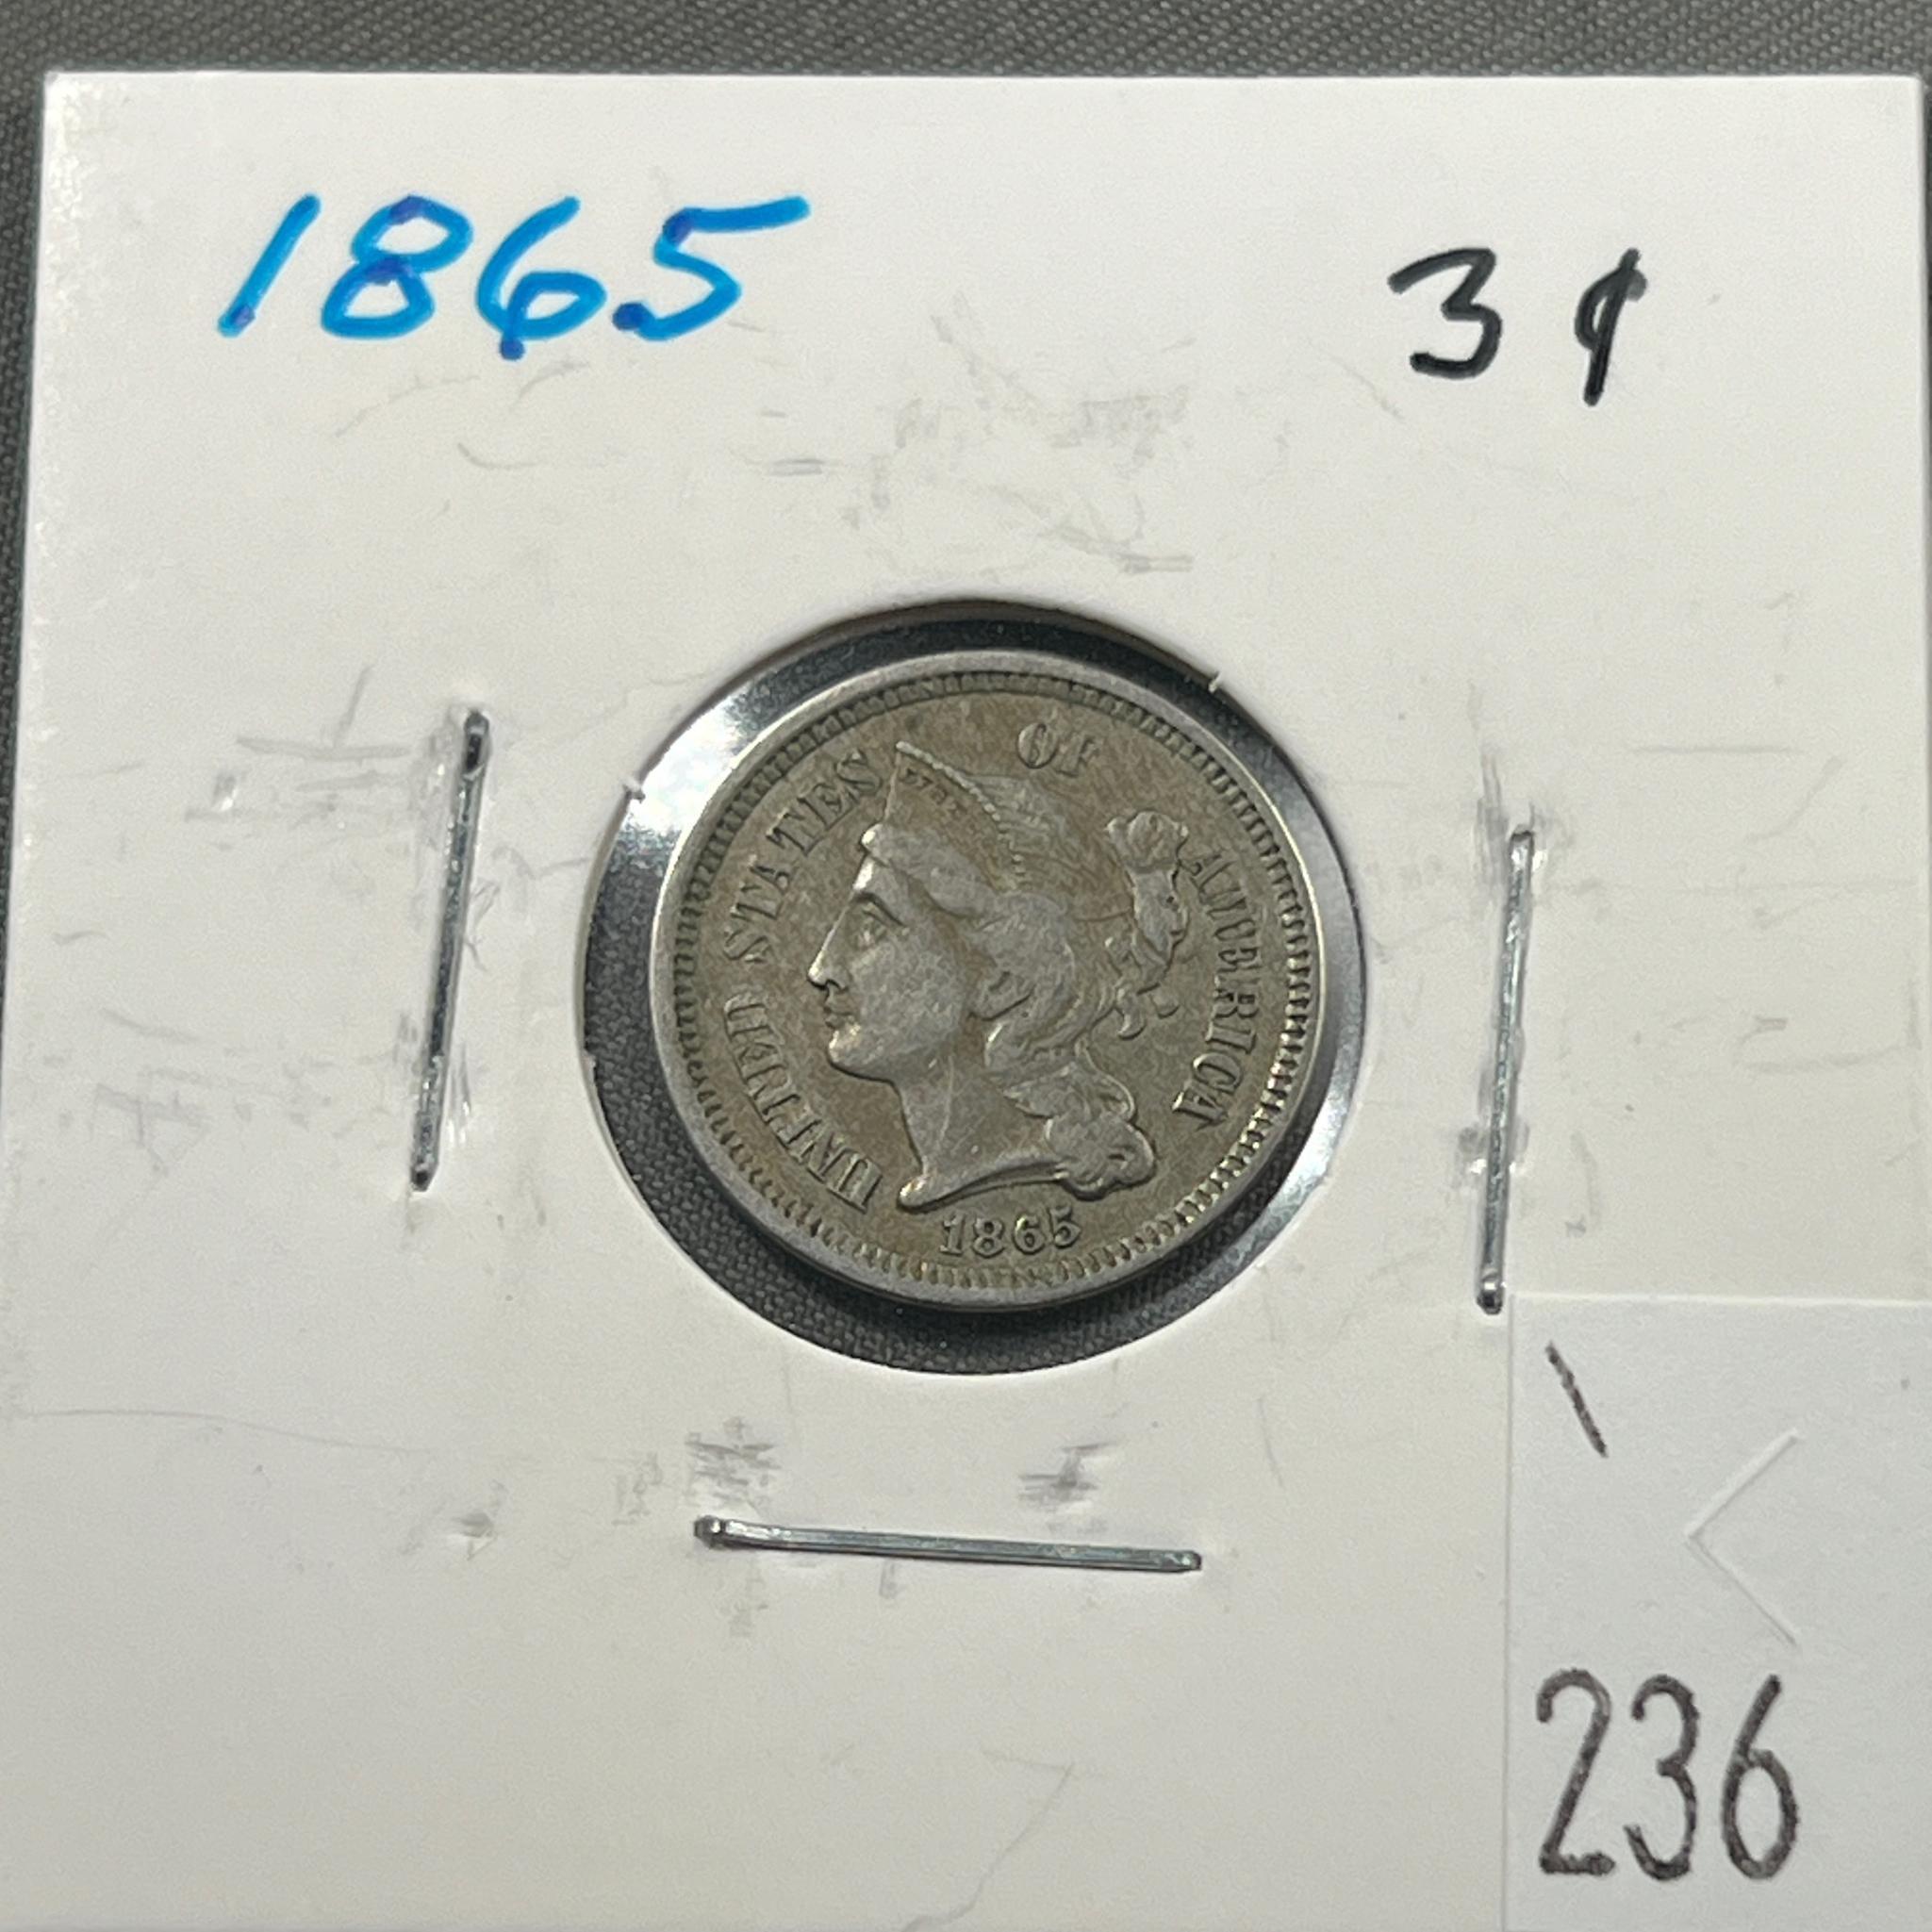 1865 US 3 Cent Nickel, Civil War Coin